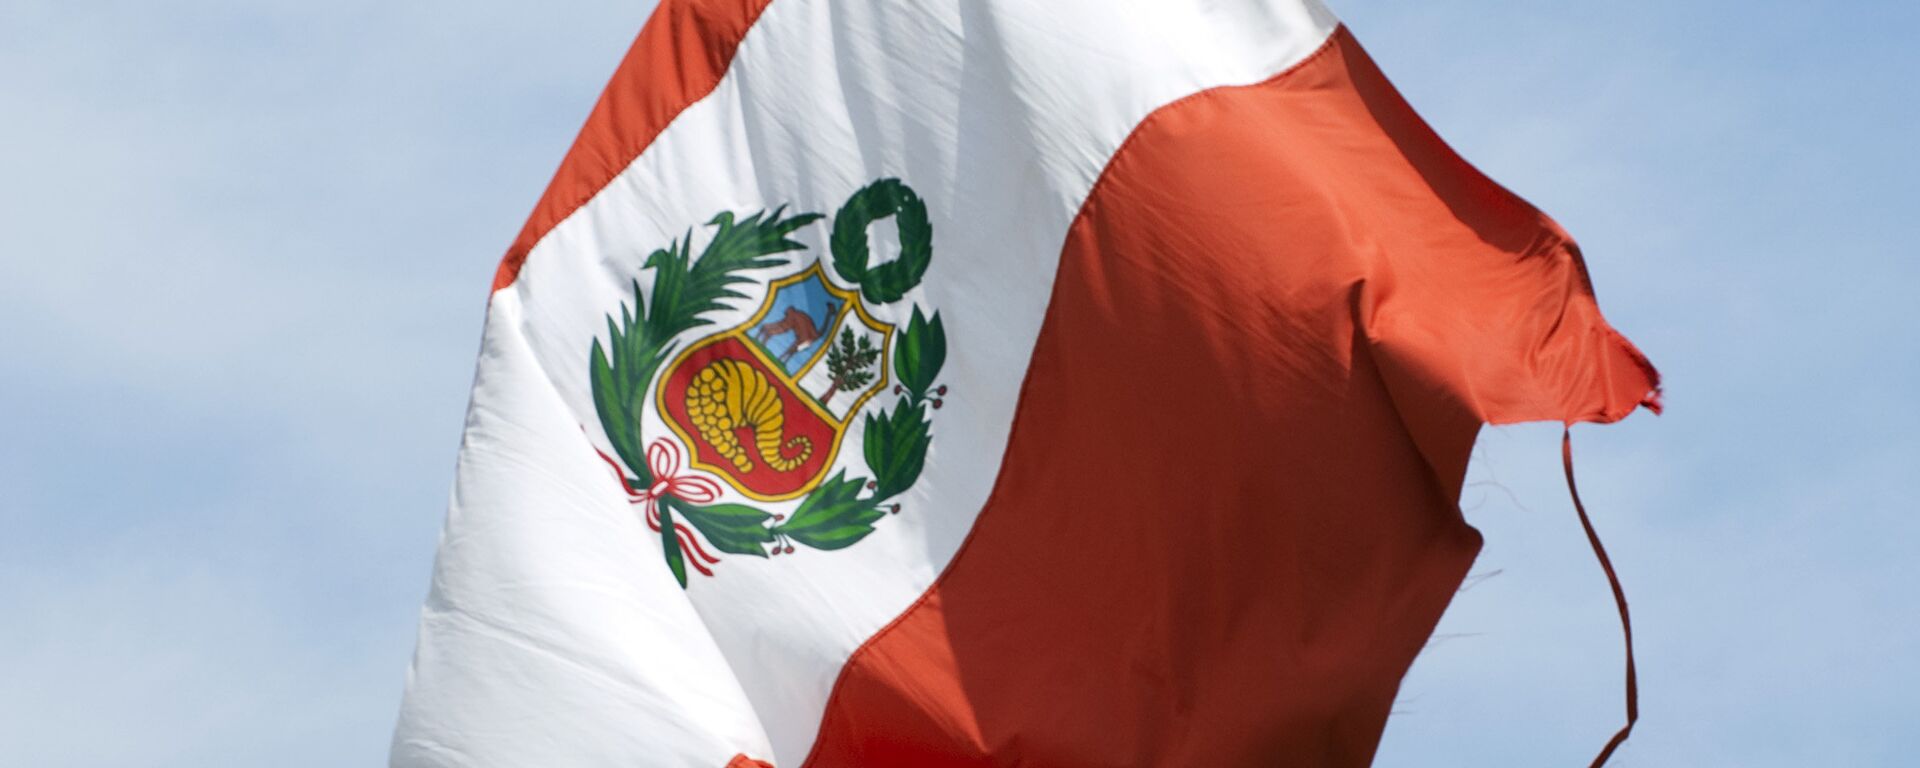 La bandera de Perú - Sputnik Mundo, 1920, 14.09.2021